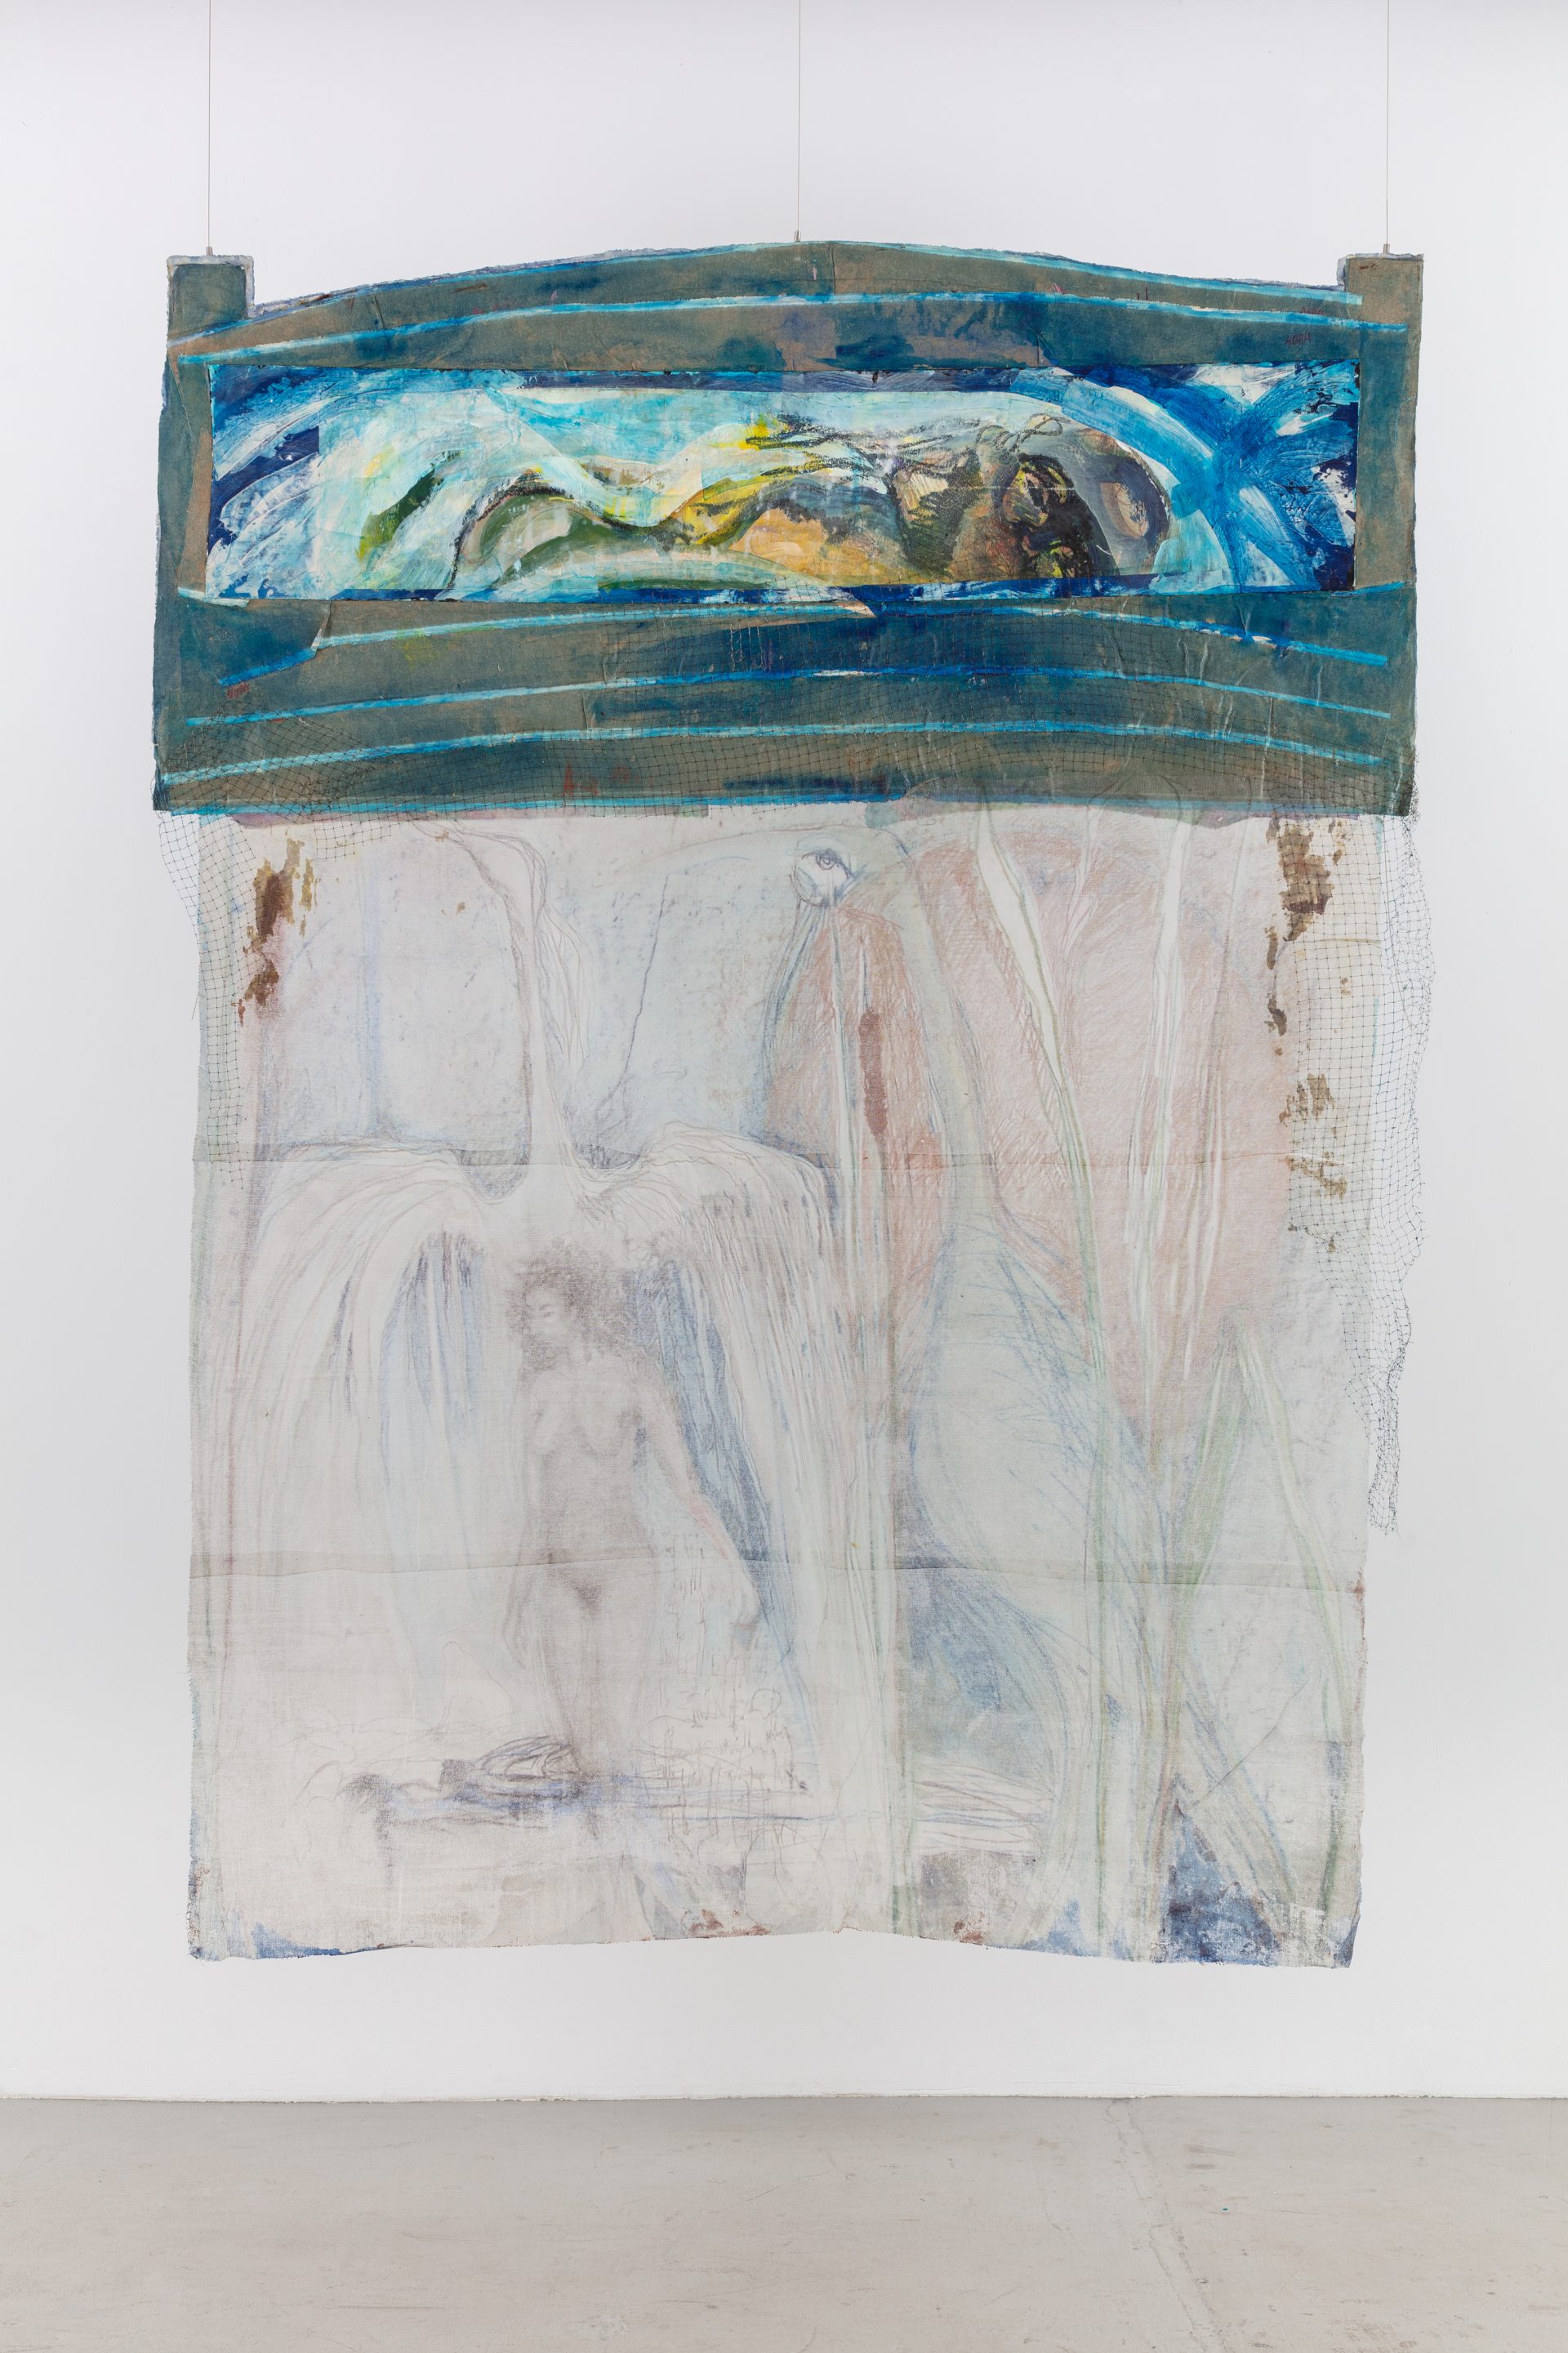 Suzanne Jackson, <i>Swim-Wildlife Refuge</i>, 2008</br>acrylic, Shibori, canvas, gauze, netting</br>
266,7 x 198,1 x 10,2 cm / 105 x 78 x 4 in